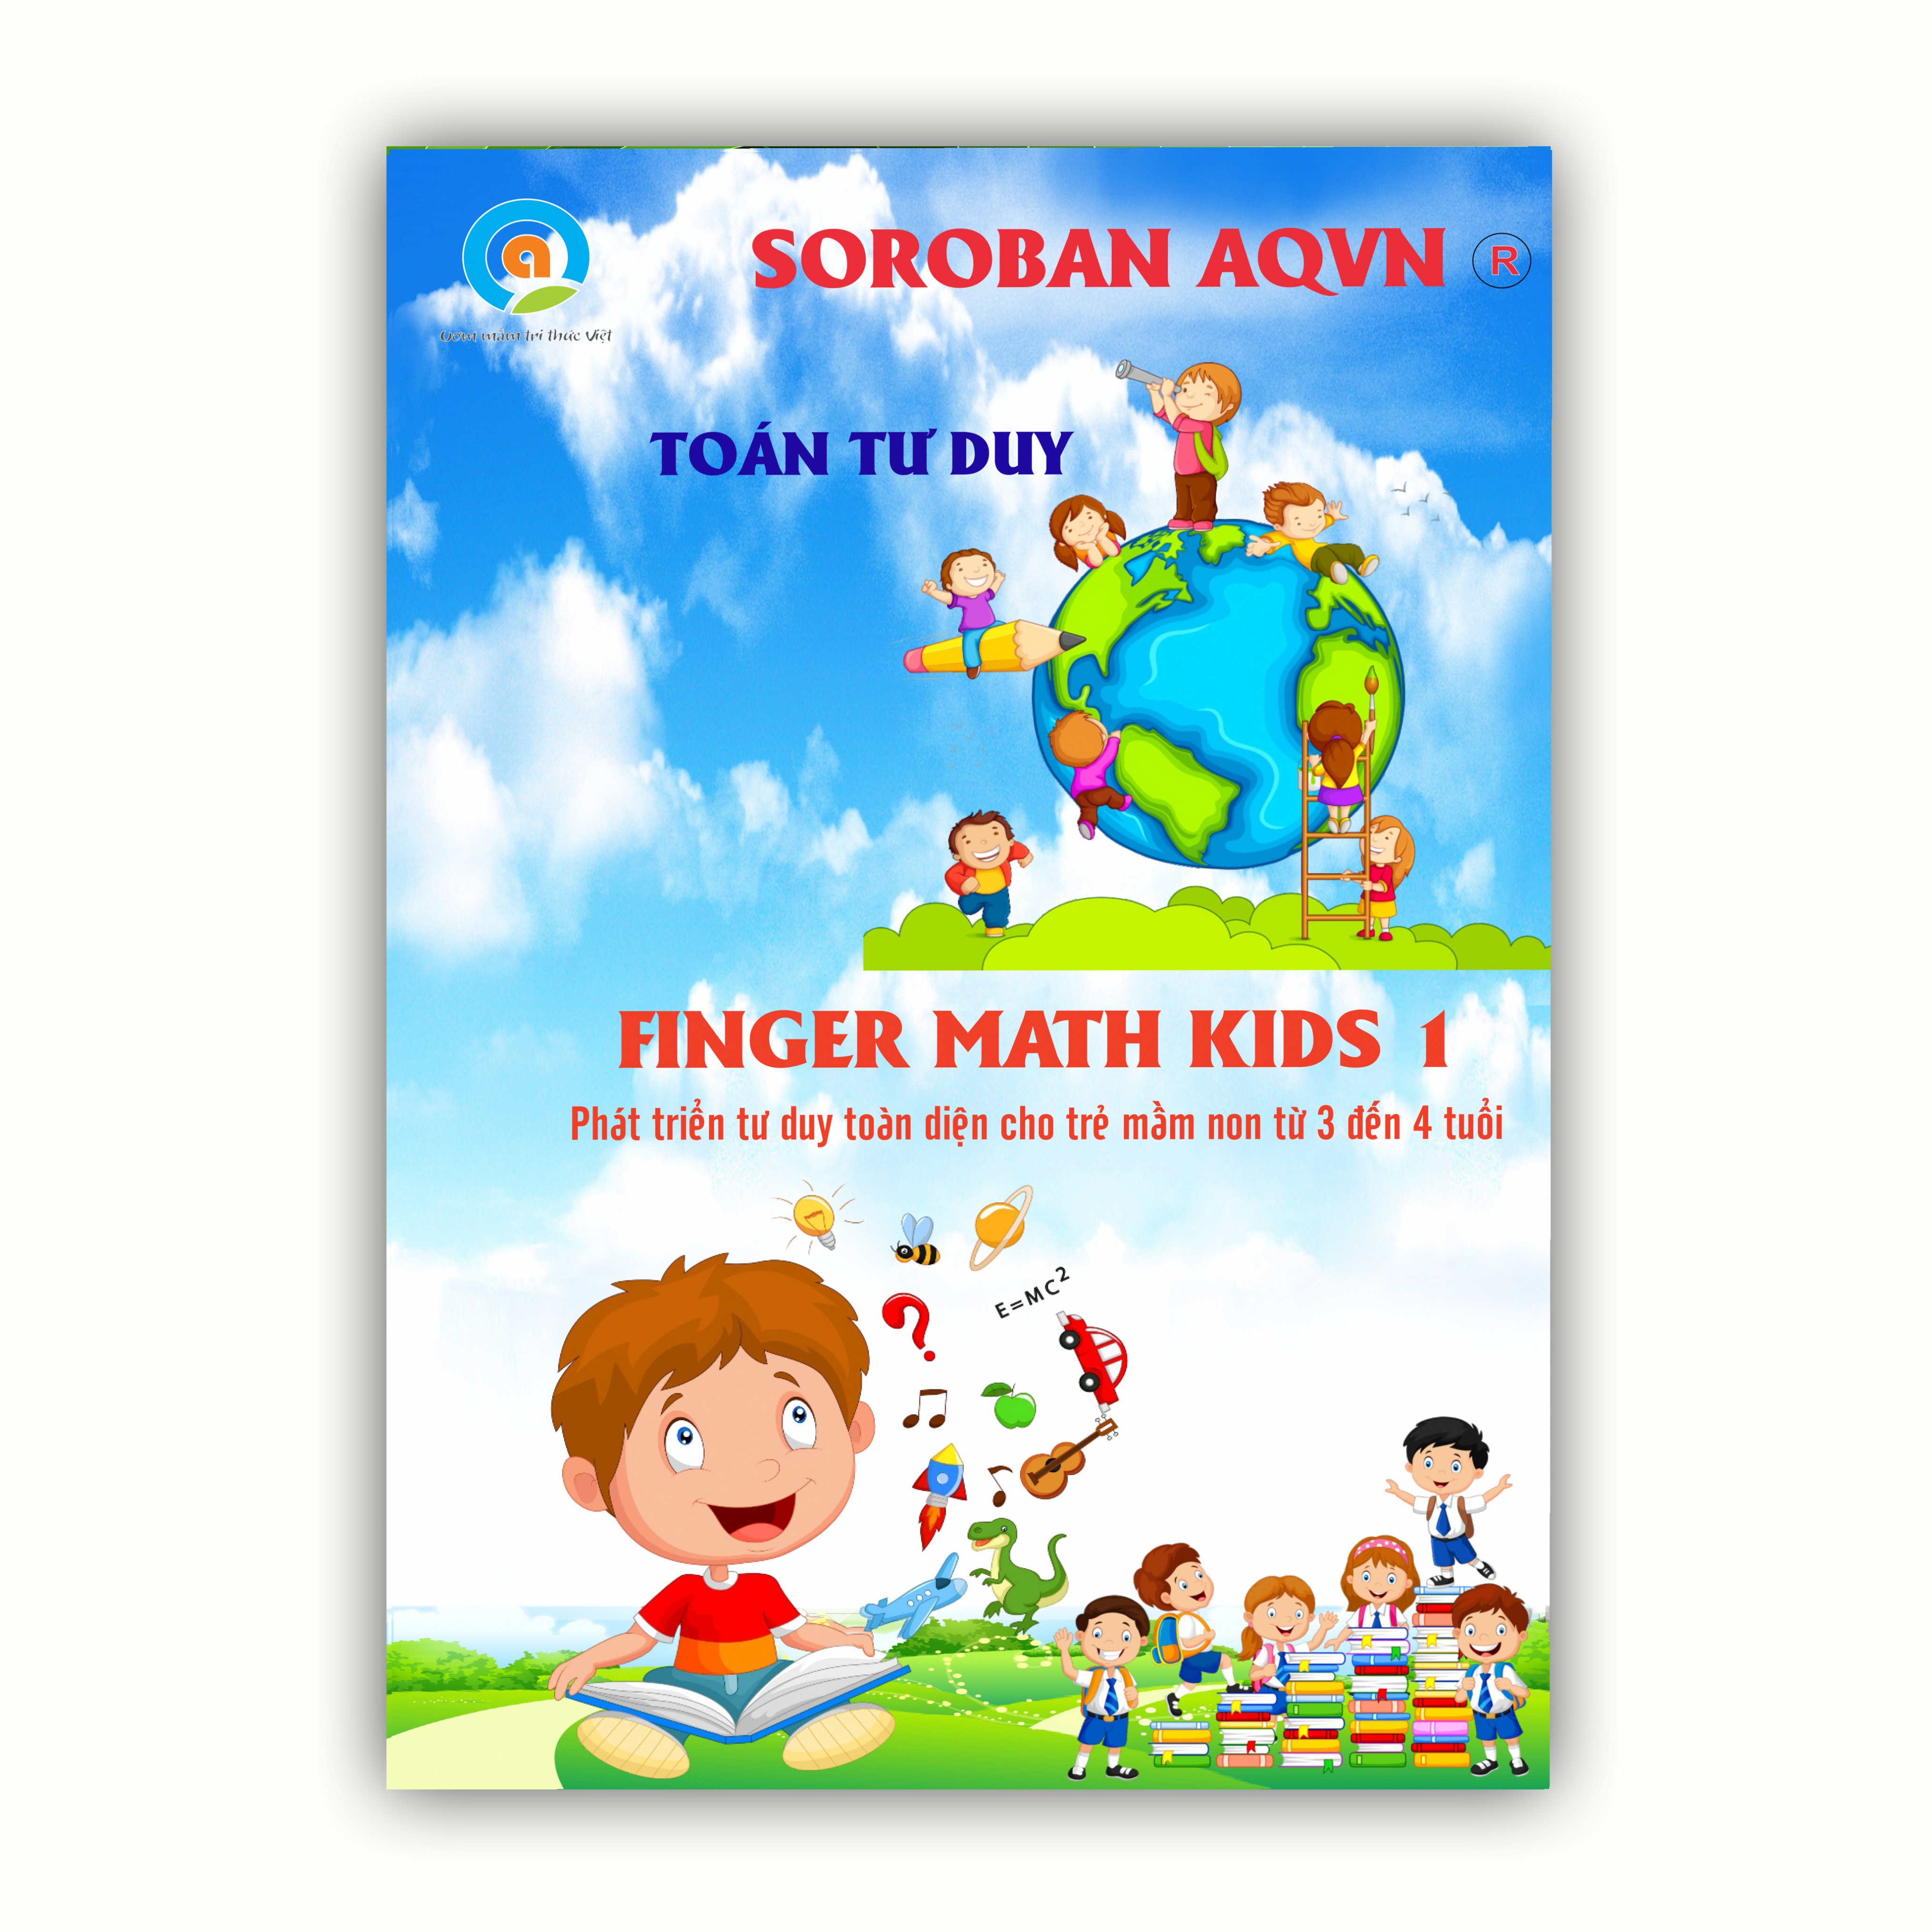 Finger math kids 1